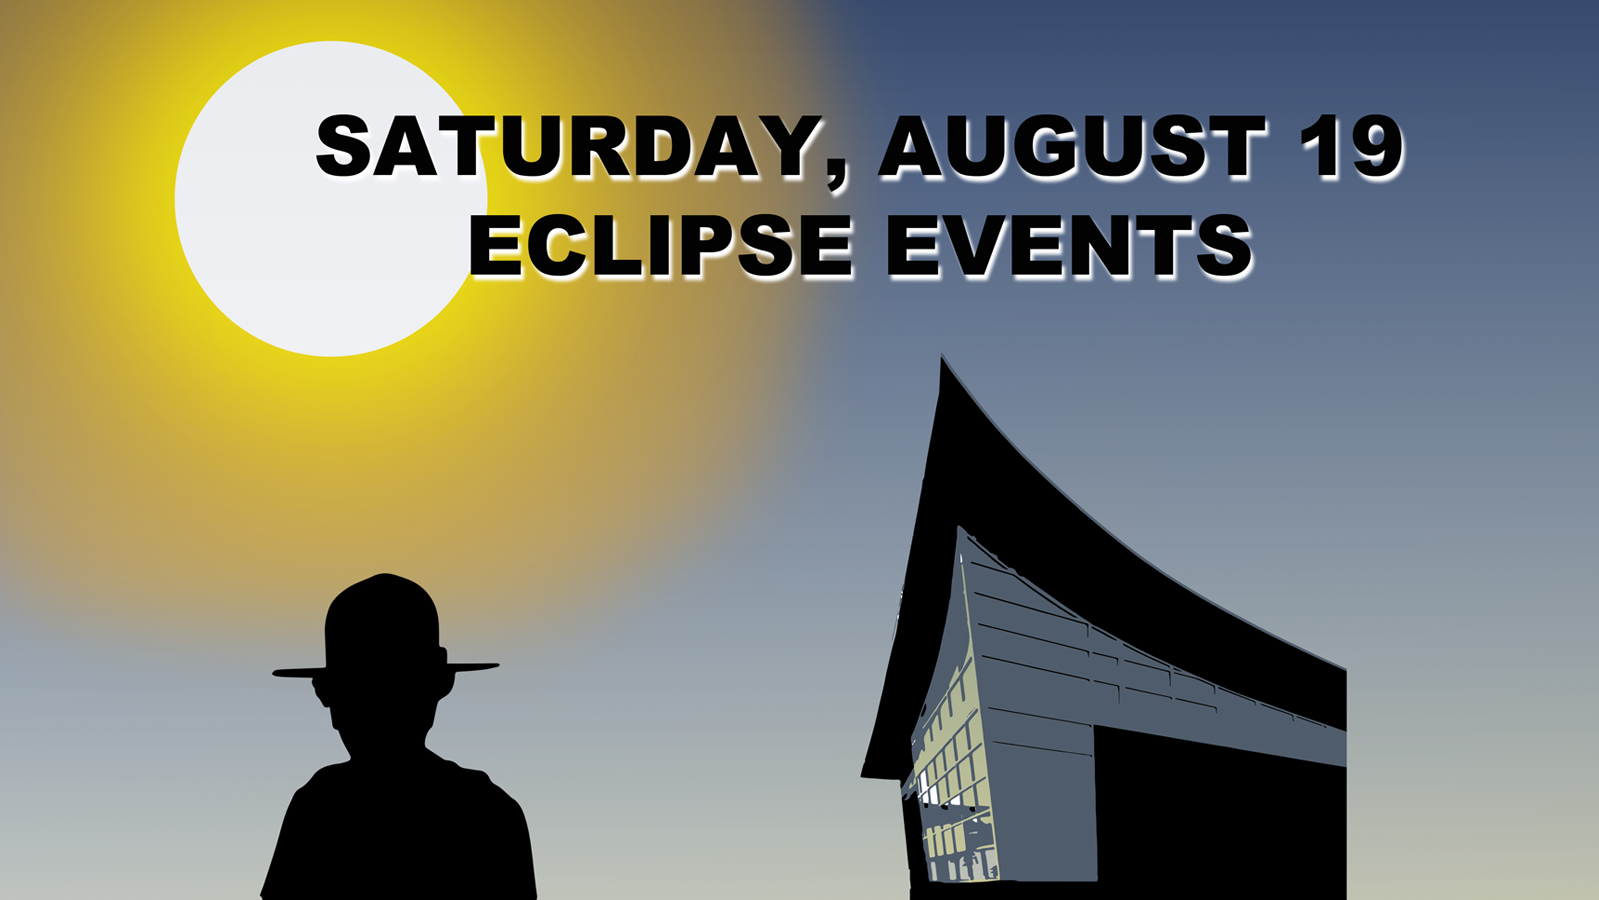 Saturday, August 19 Eclipse Schedule